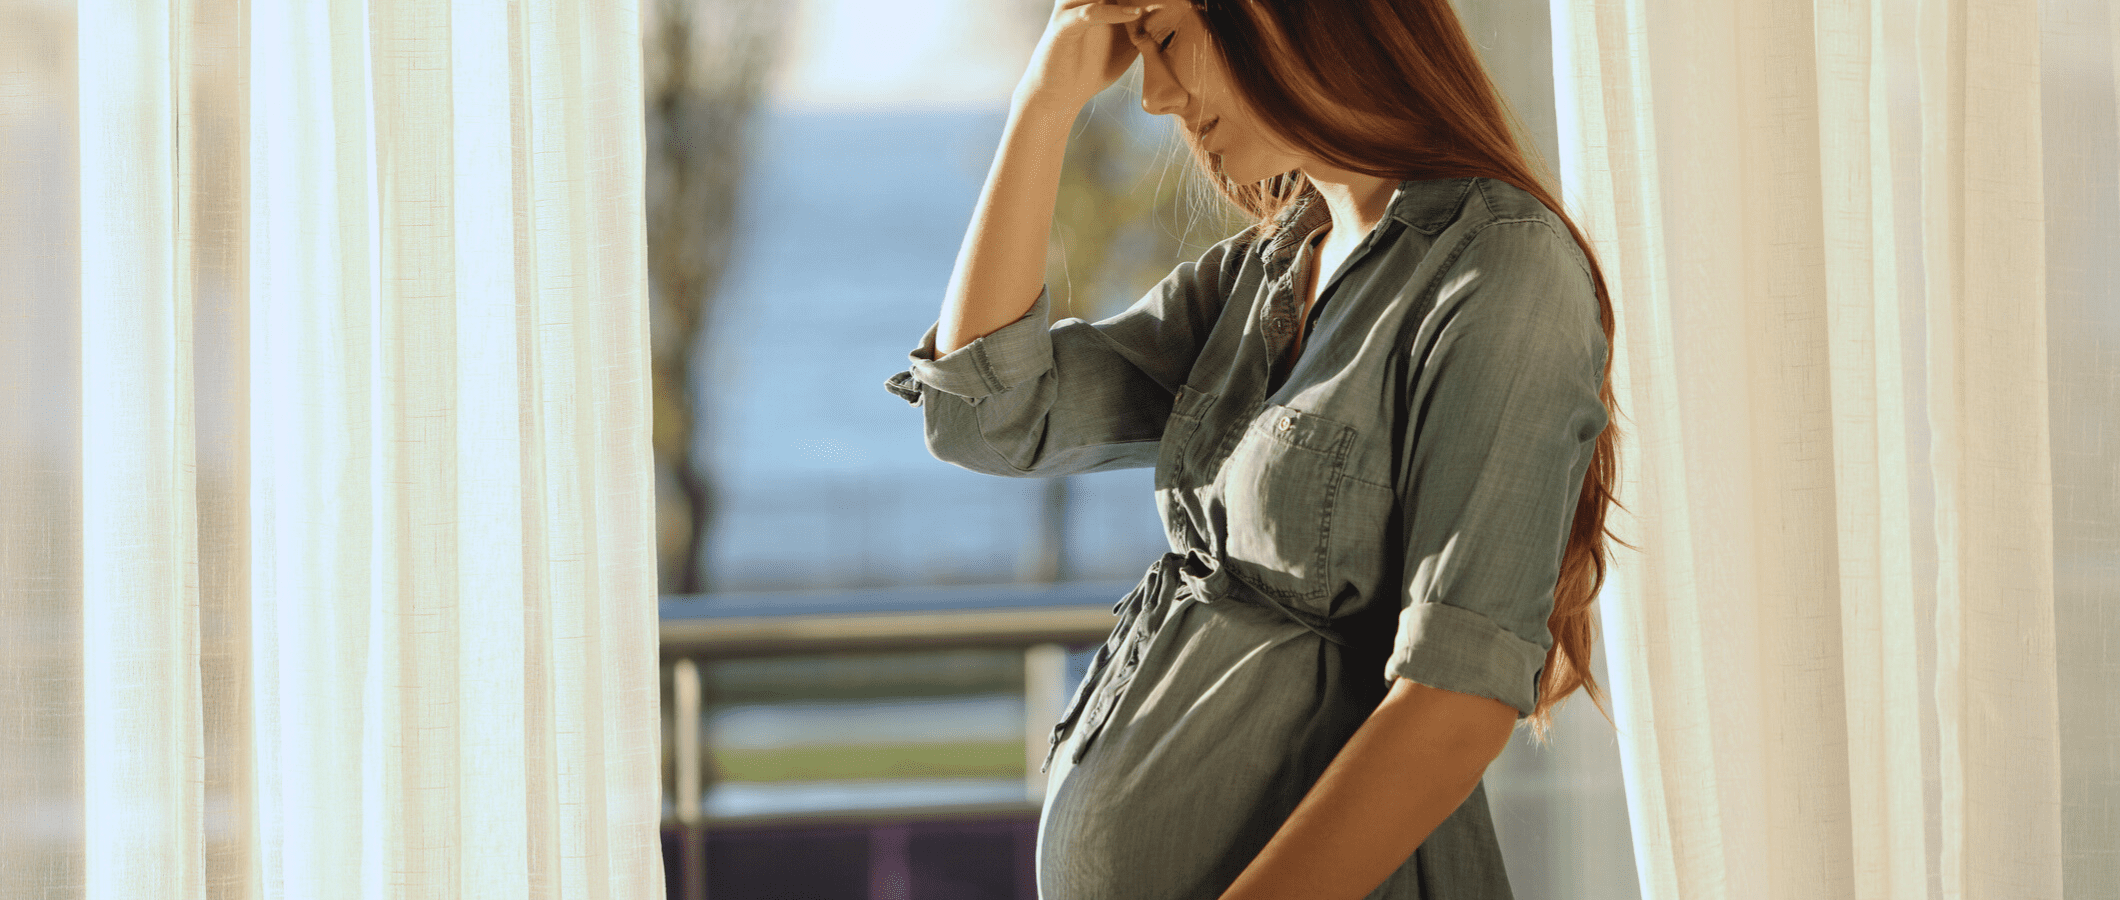 femme enceinte avec de l'anxiété périnatale pendant la grossesse et après l'accouchement